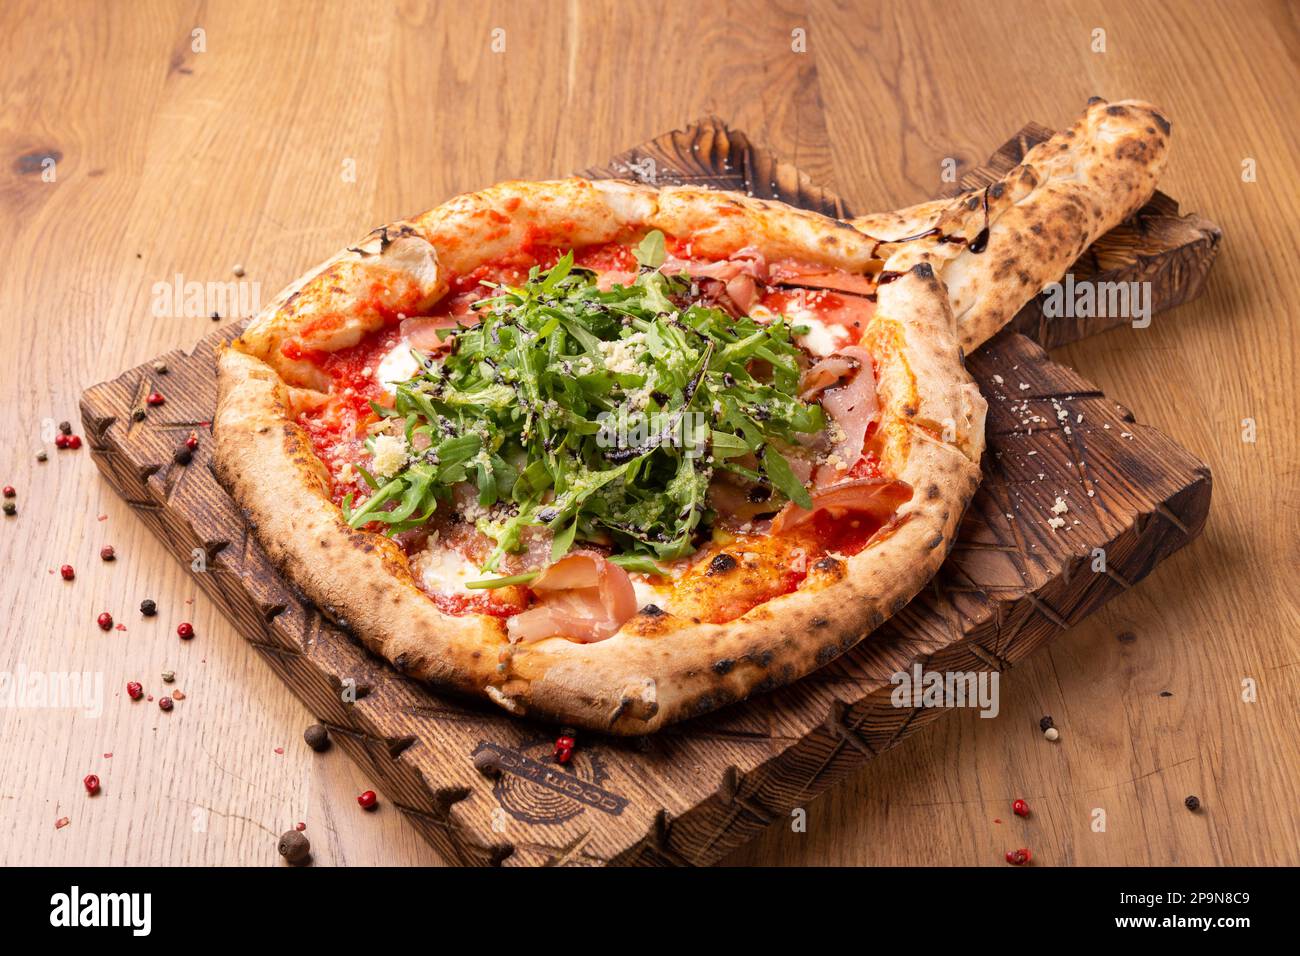 Pizza al forno con mozzarella, prosciutto secco, pomodori, aceto balsamico e rucola su fondo ligneo. Vista ravvicinata Foto Stock